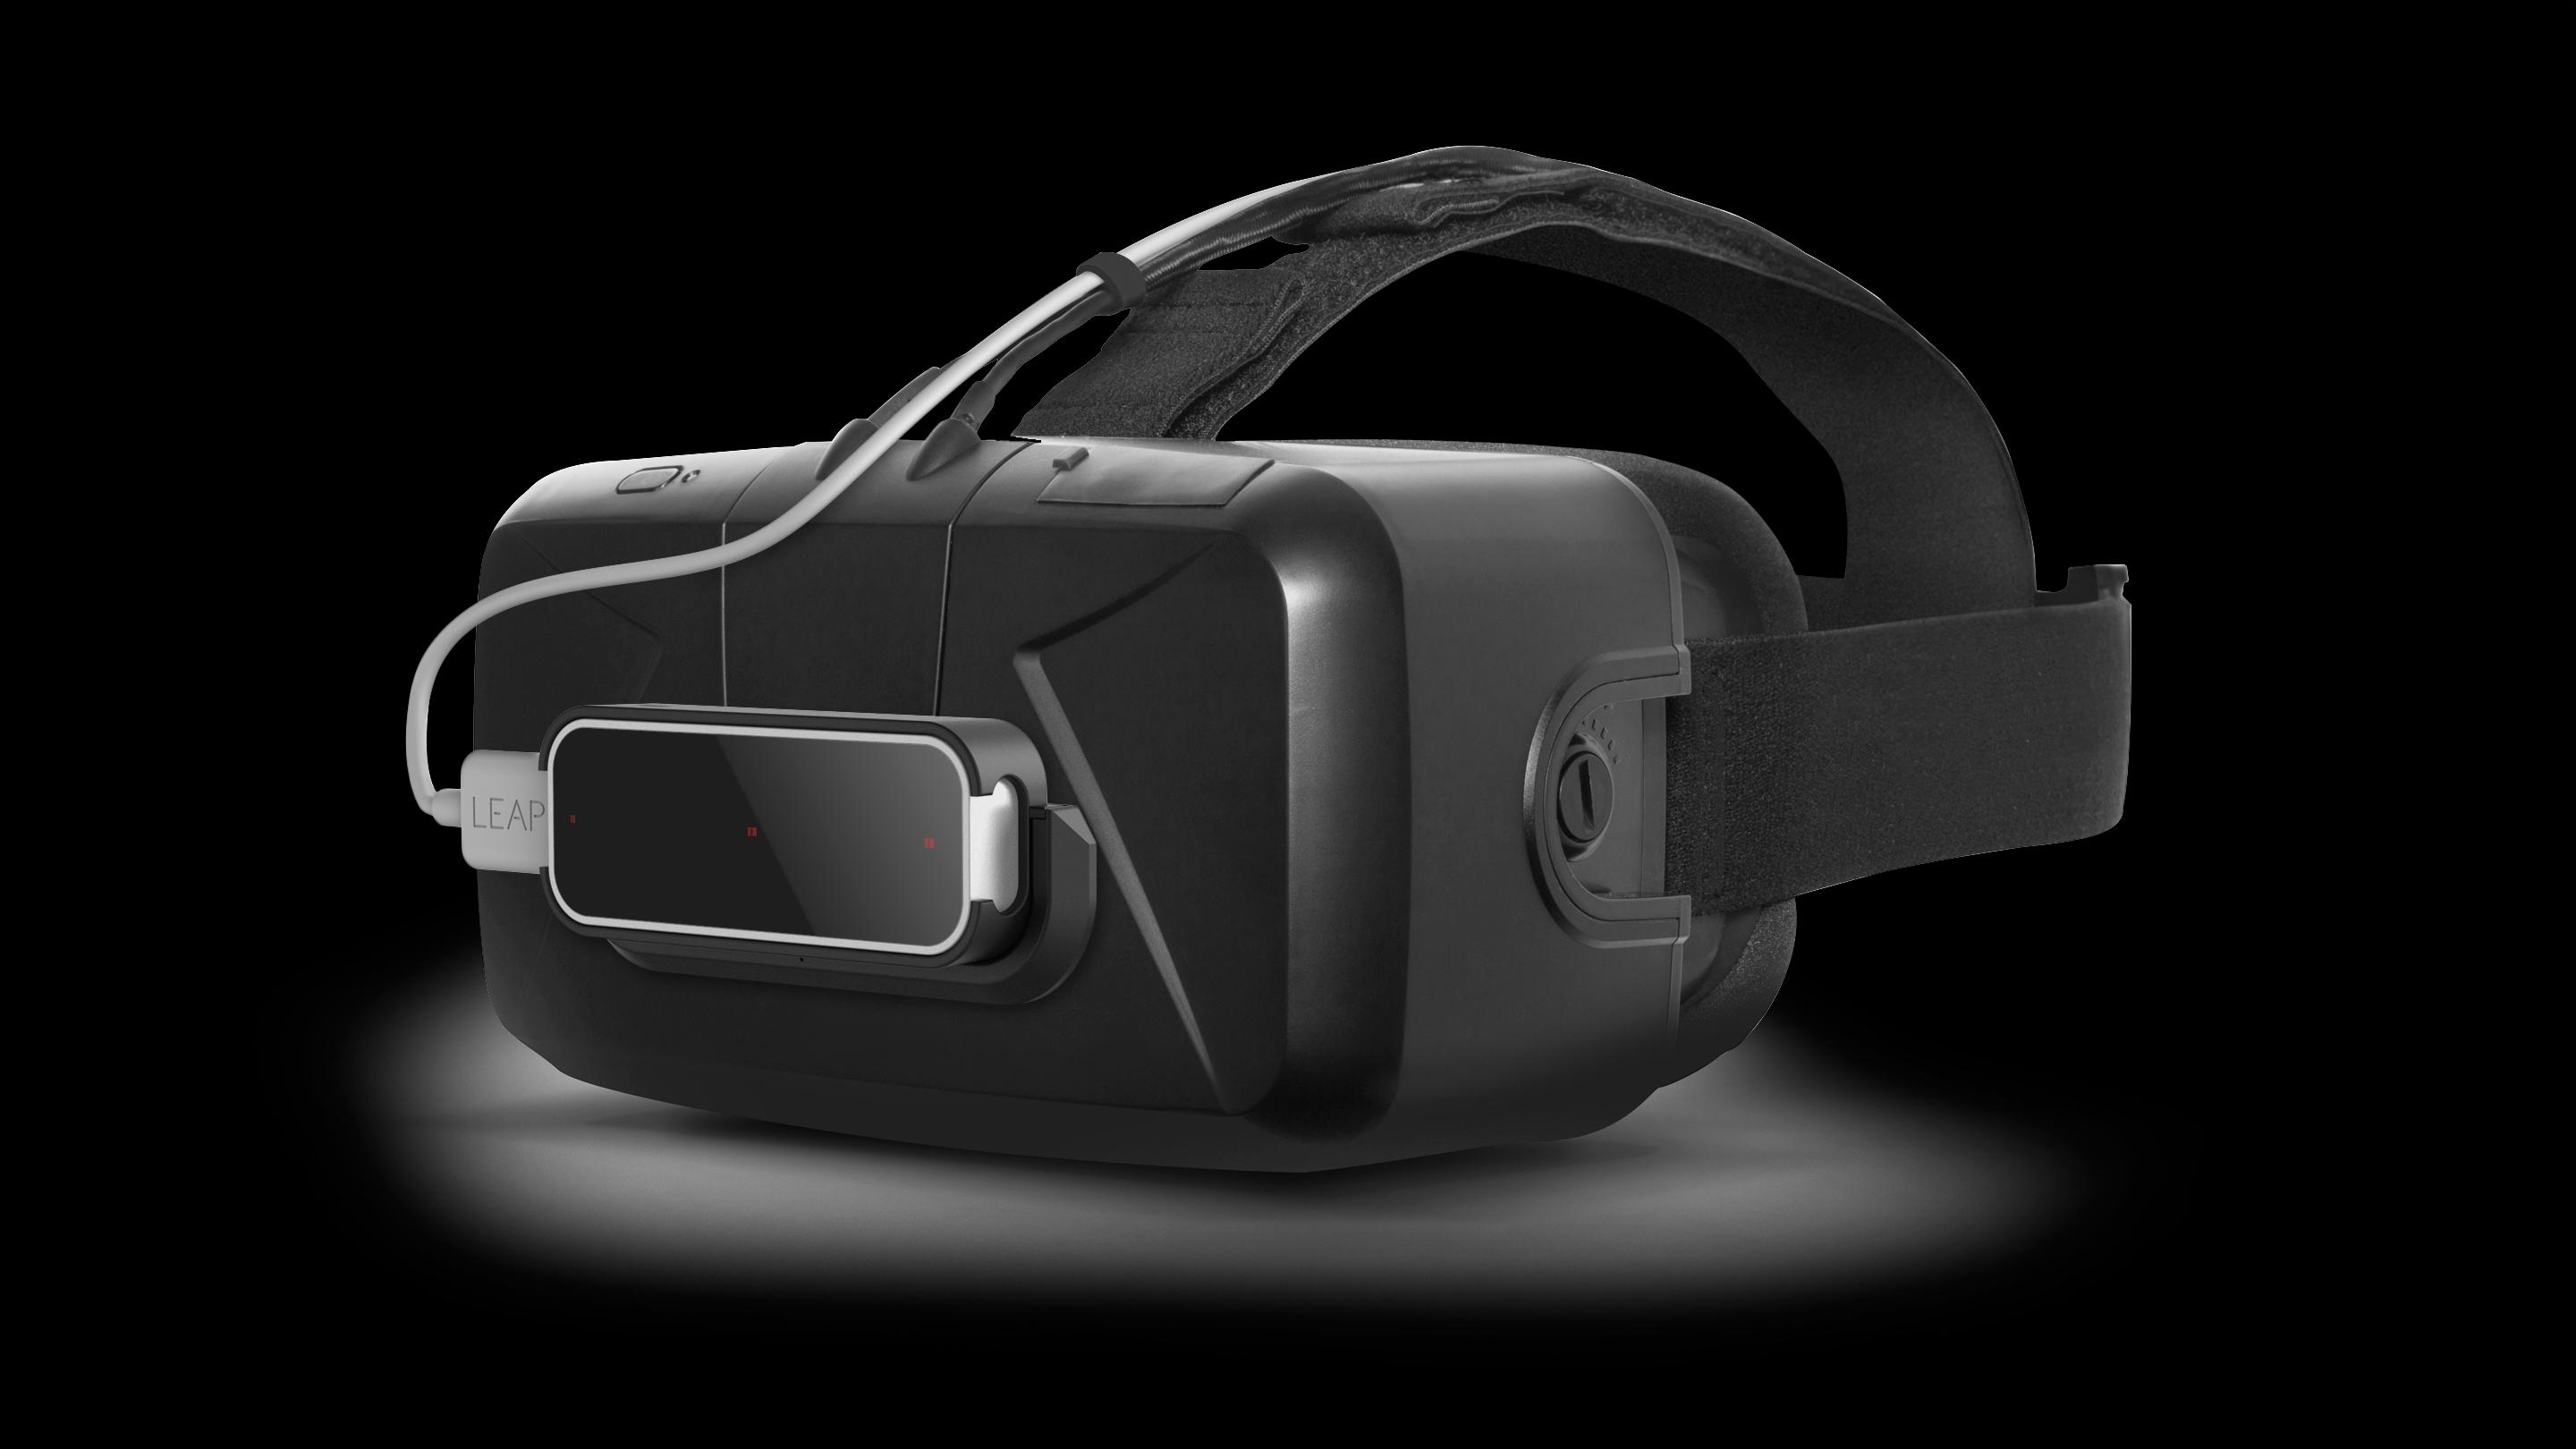 Leap Motion-sensoren har tidligere blitt festet til Oculus Rift-brillene, men nå skal teknologien integreres fullstendig i maskinvaren.